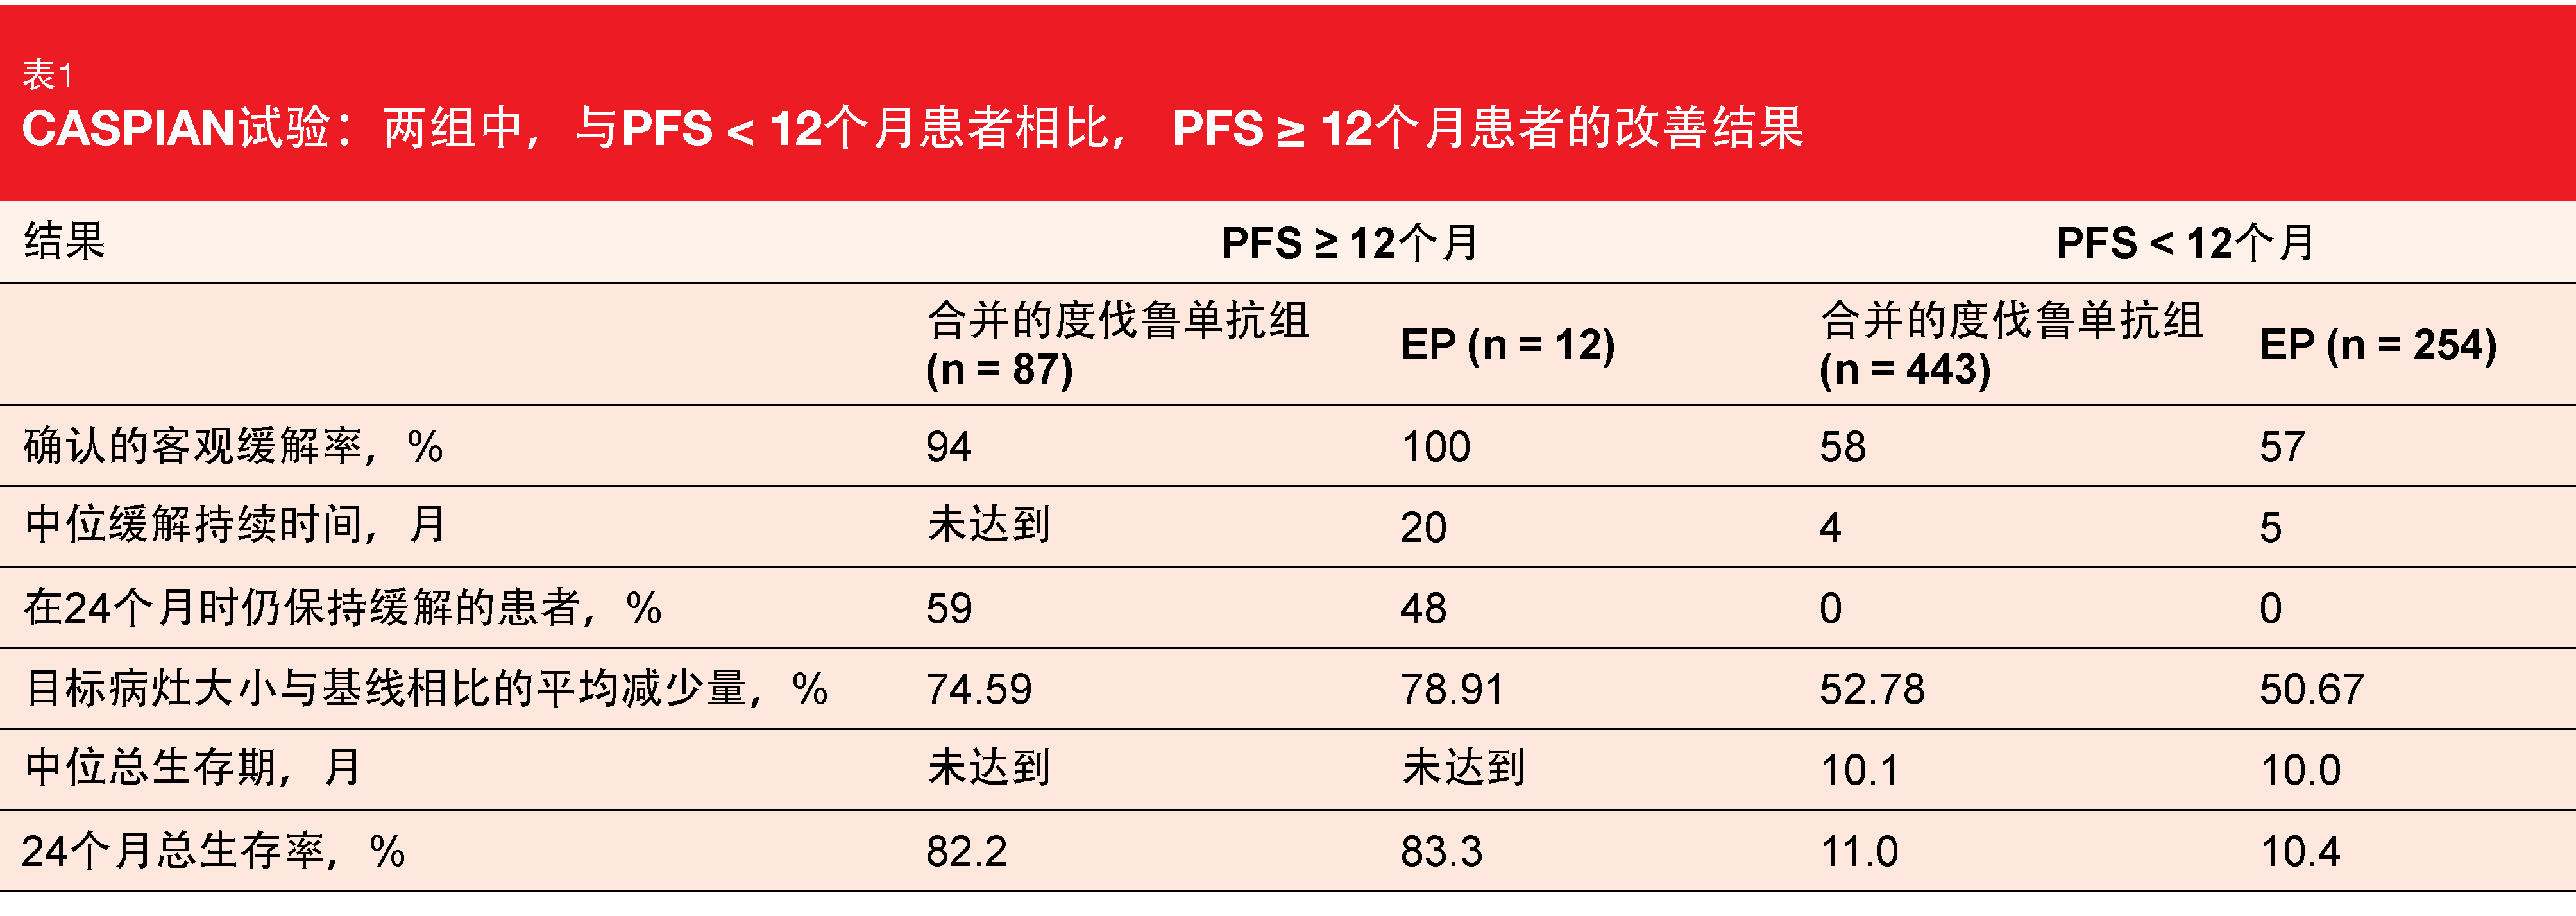 表1 CASPIAN试验：两组中，与PFS < 12个月患者相比， PFS ≥ 12个月患者的改善结果